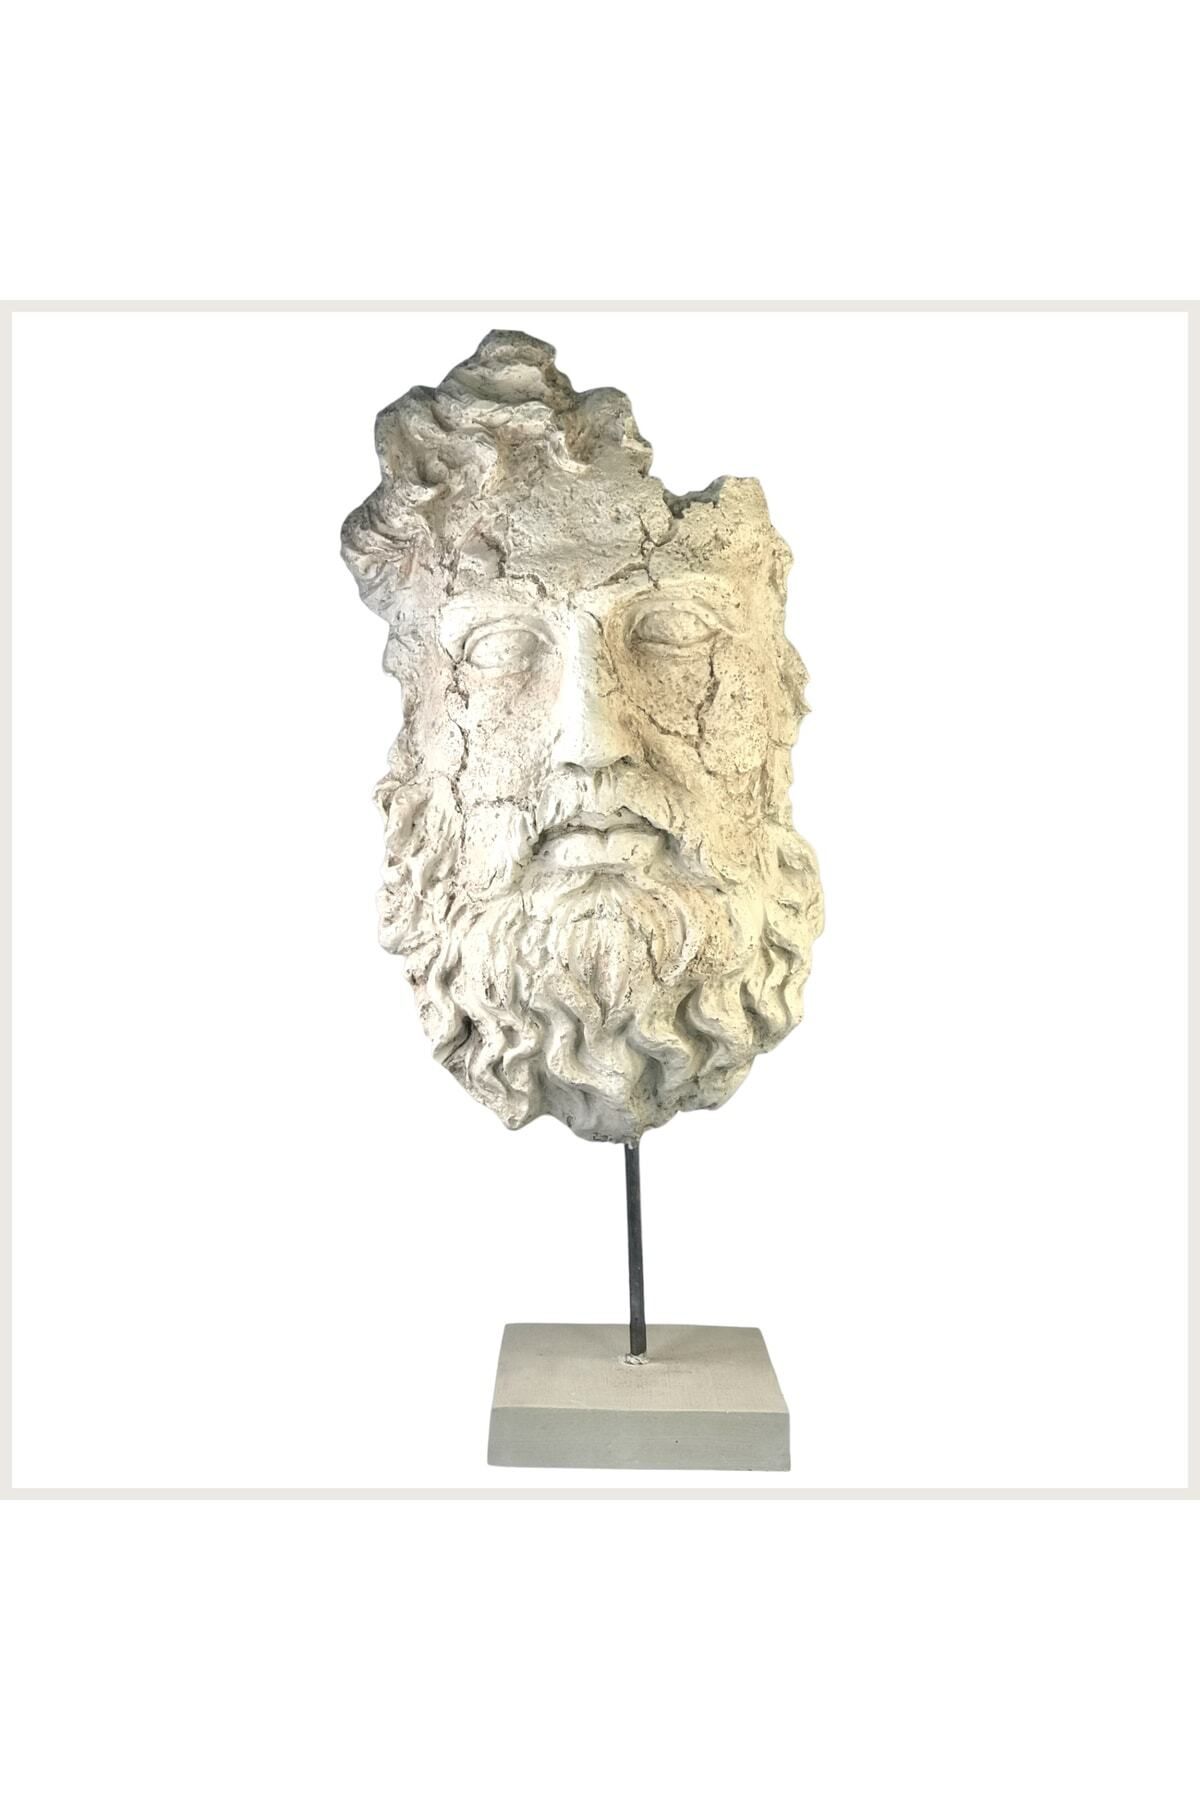 Daida Design Kaideli Antik Yunan Zeus Büstü & Heykel